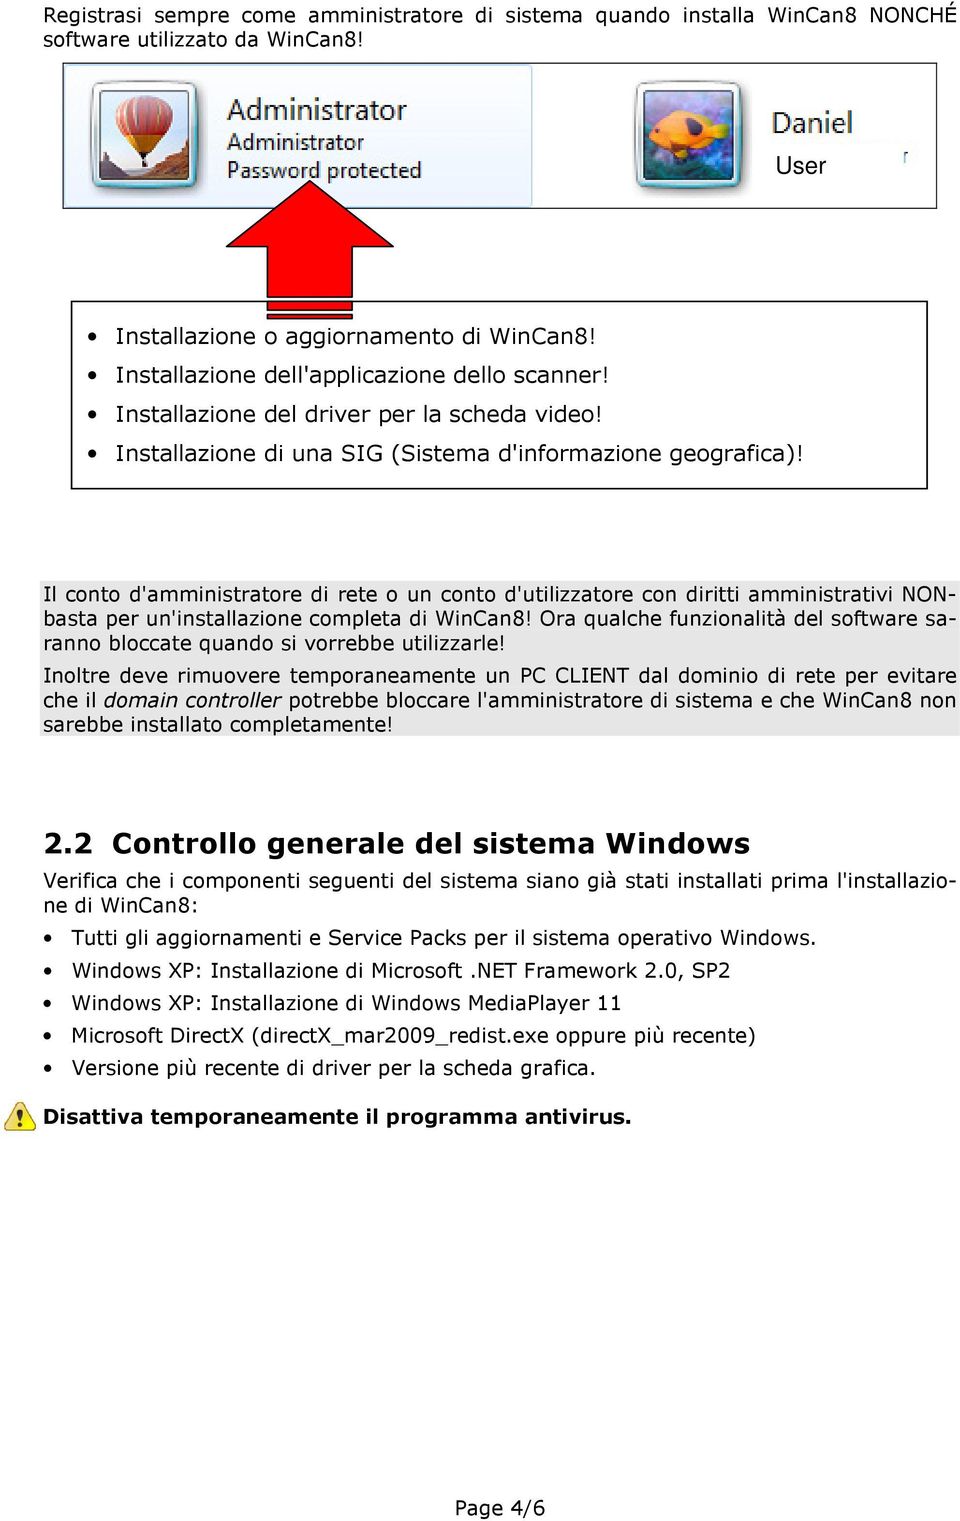 Il conto d'amministratore di rete o un conto d'utilizzatore con diritti amministrativi NONbasta per un'installazione completa di WinCan8!